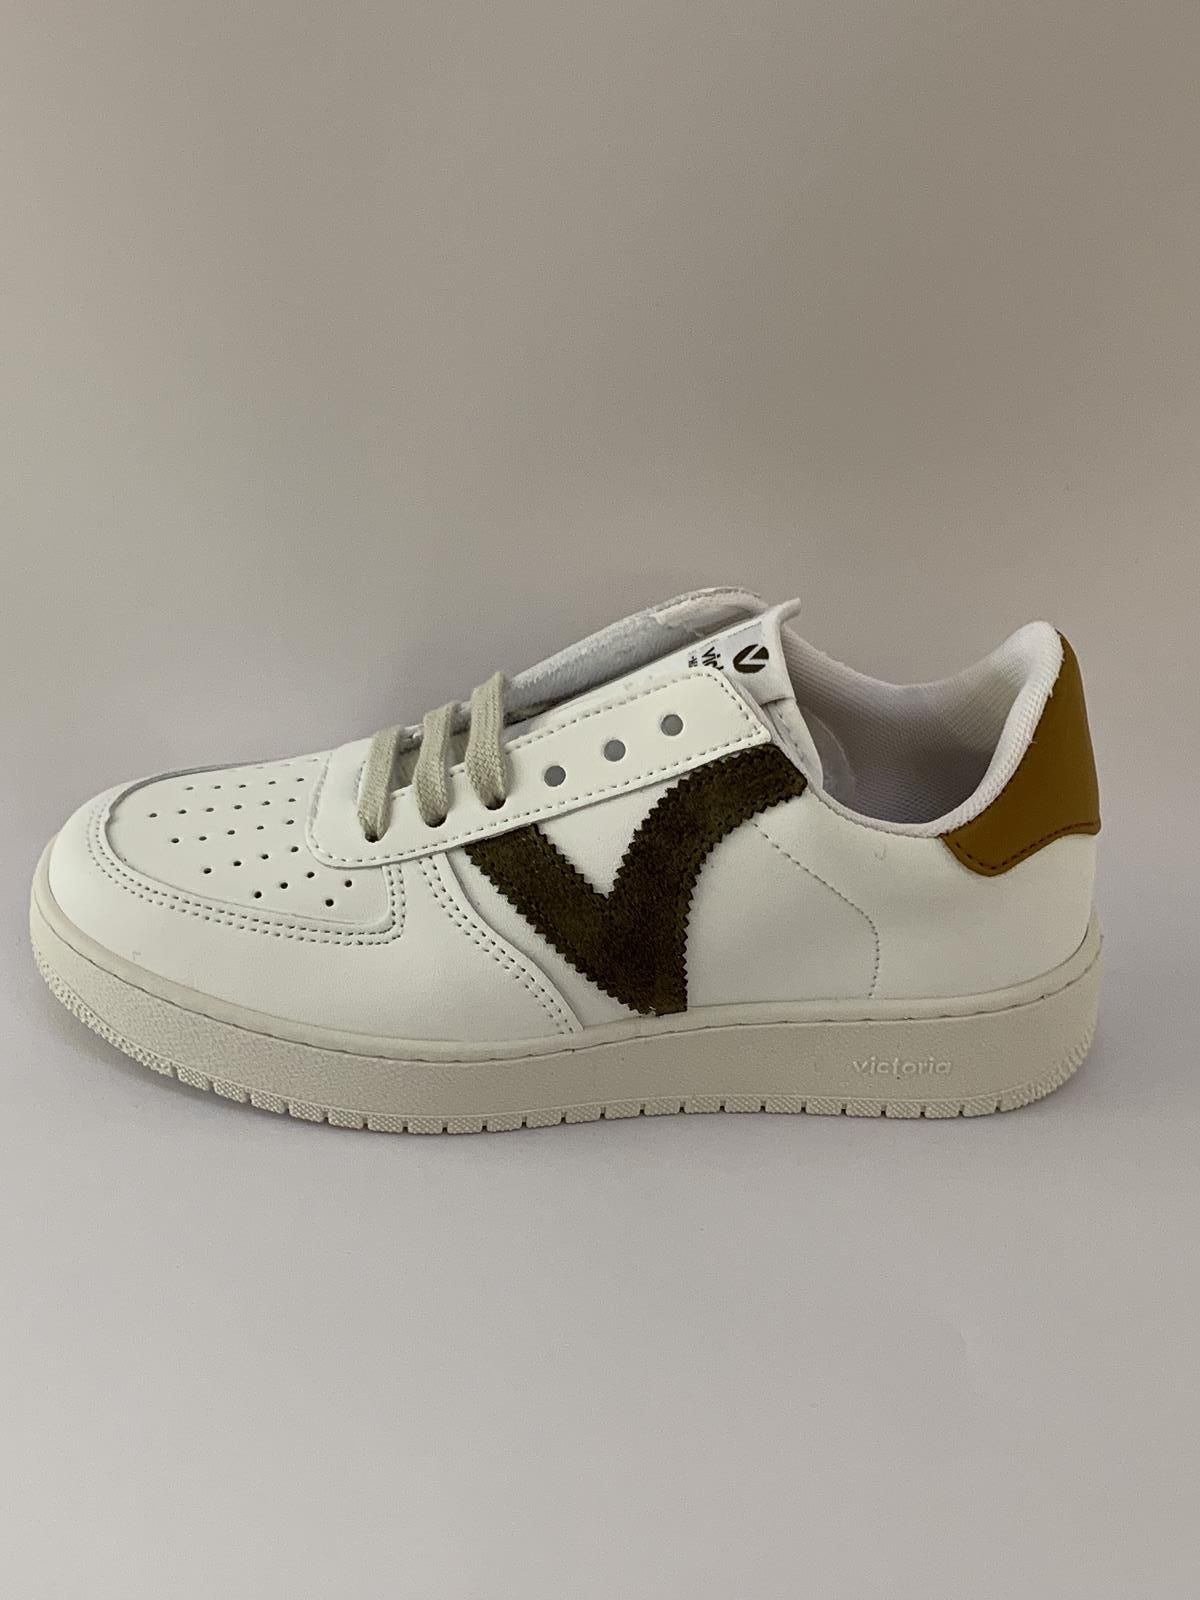 Victoria Sneaker Wit+kleur unisex (Sneaker Force Kaki - 258201) - Schoenen Luca